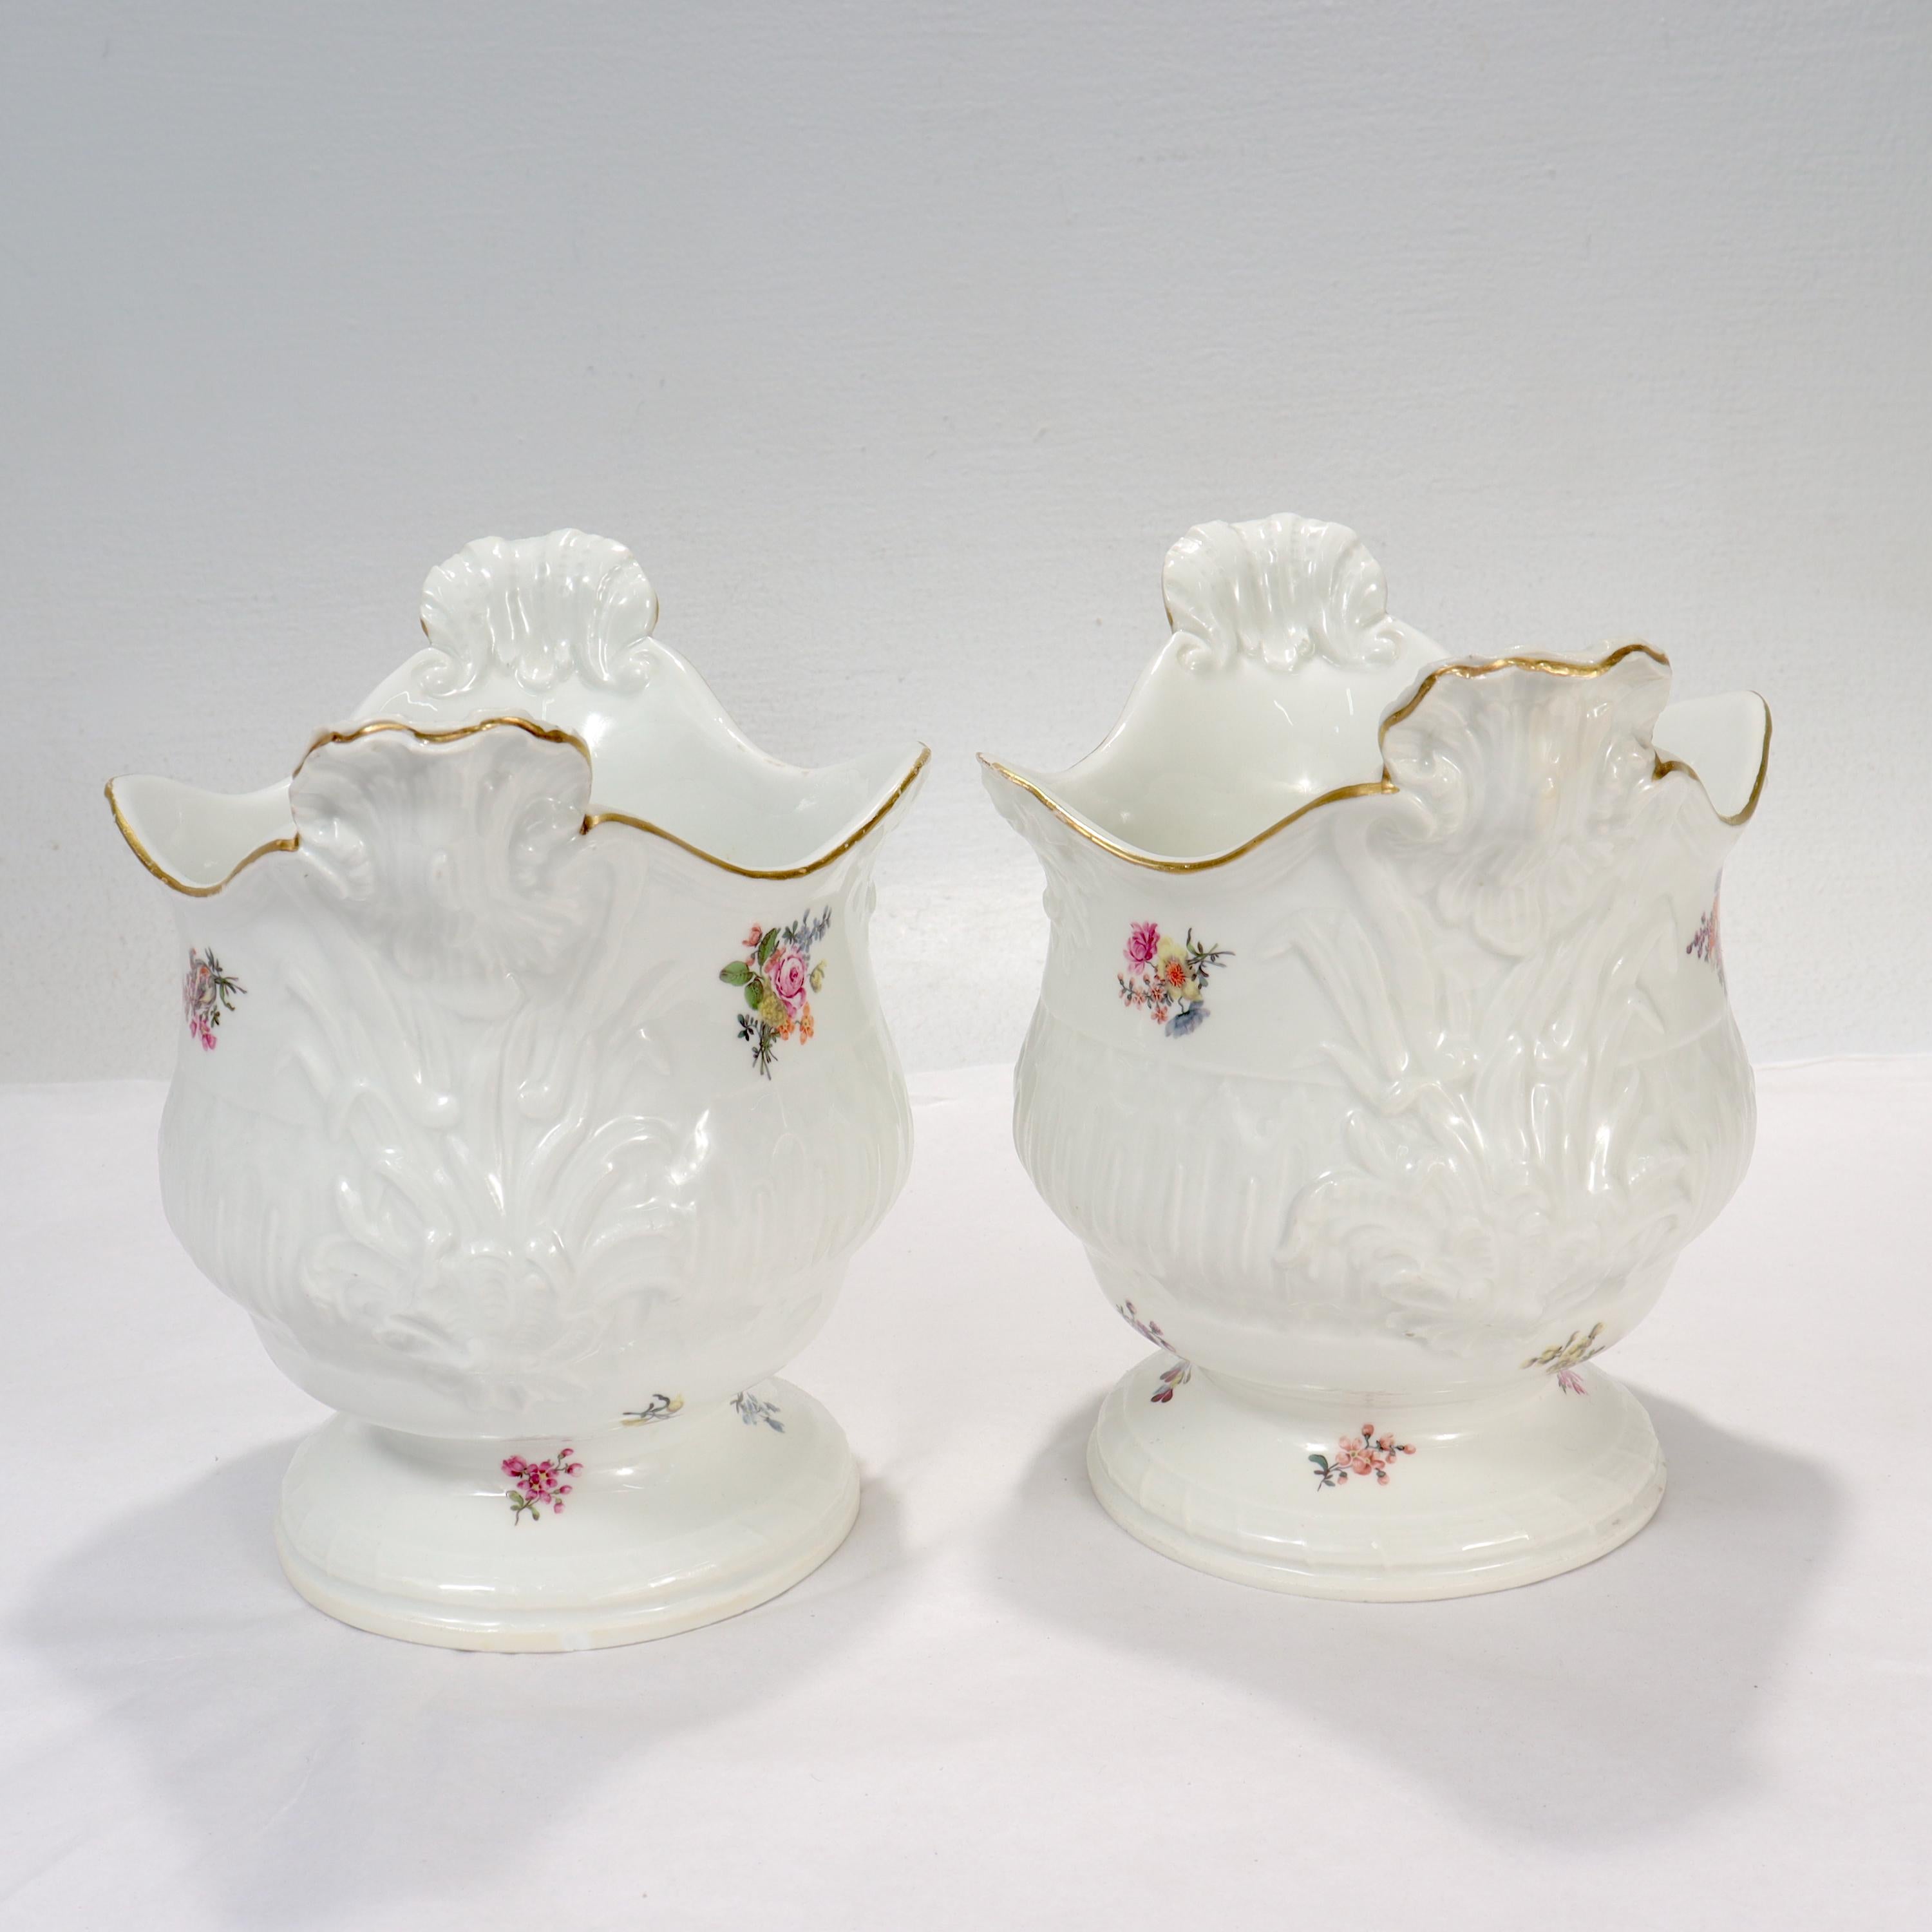 Pair of Antique 18th / 19th Century Meissen Porcelain Cachepots or Flower Pots For Sale 2